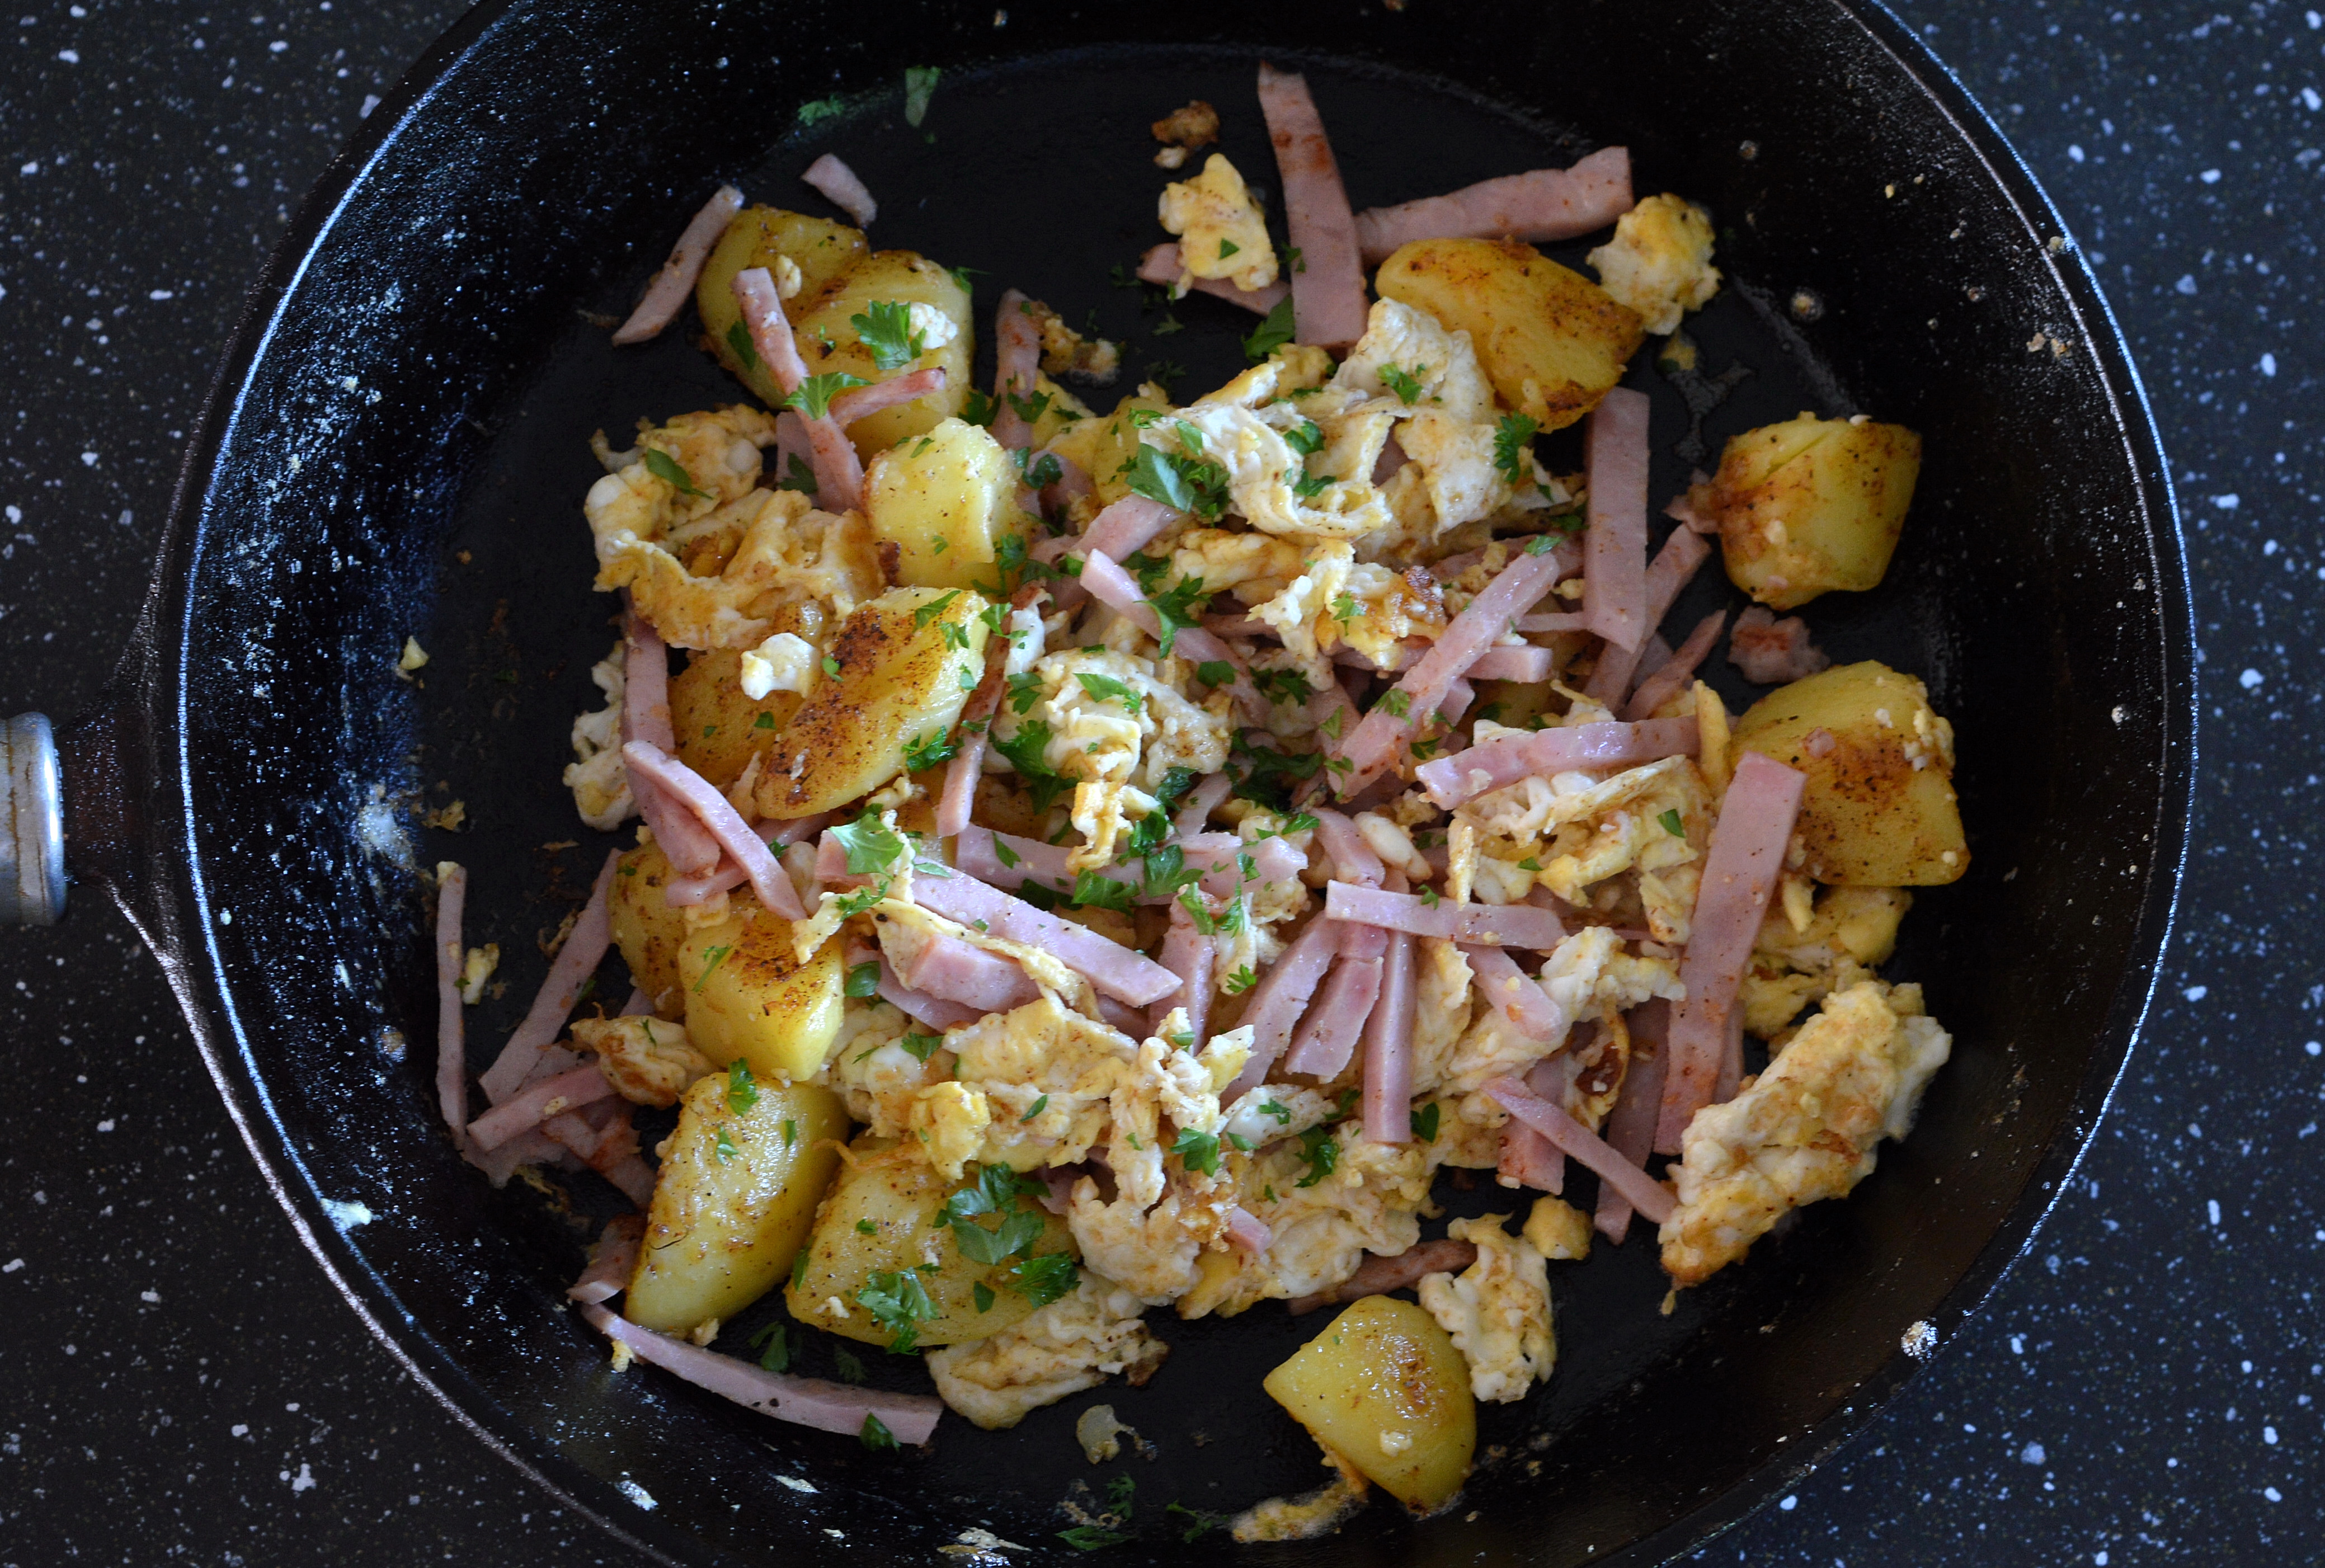 Potatis- & skinkpytt med ägg